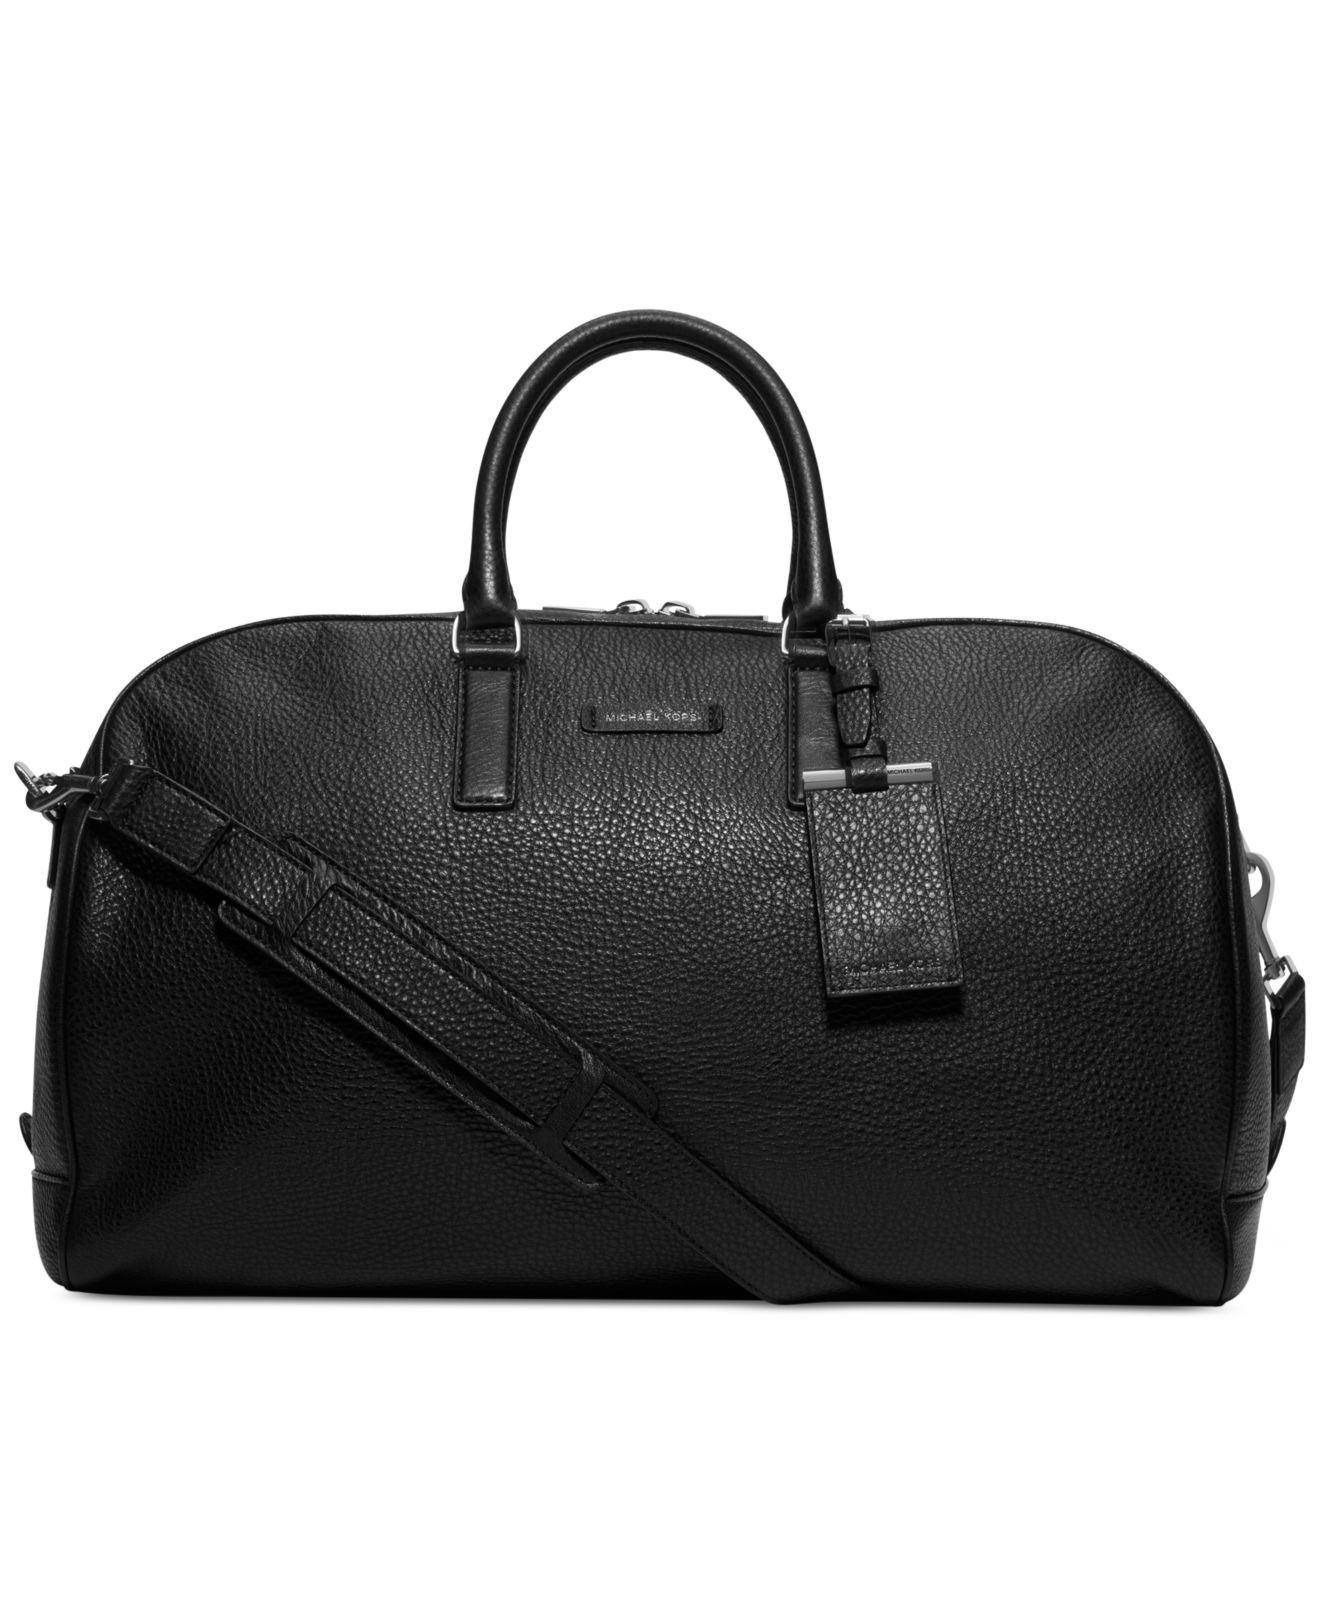 Michael Kors Bryant Duffle Bag in Black for Men - Lyst